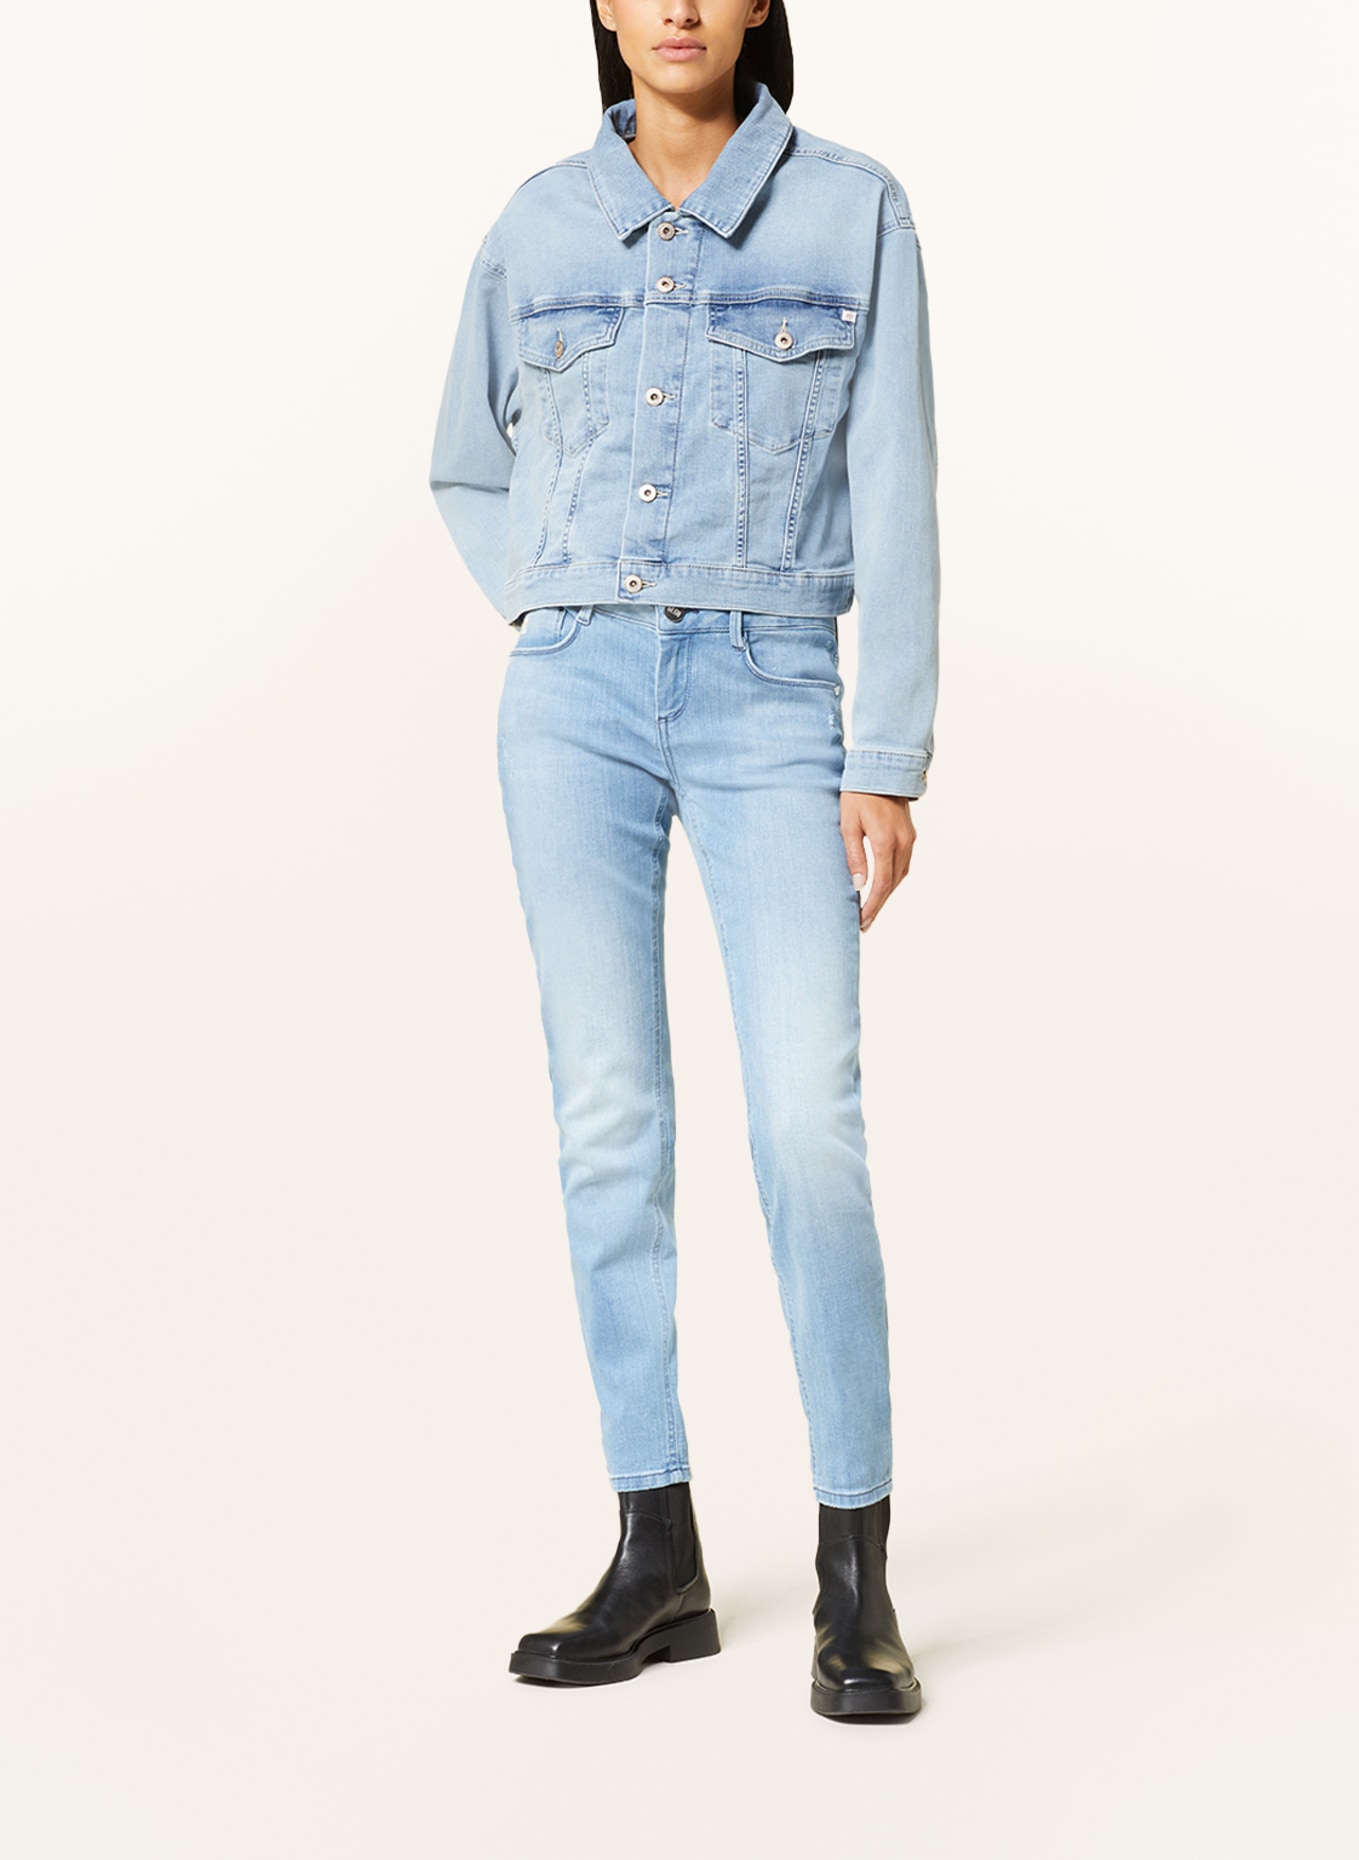 GOLDGARN DENIM Skinny jeans JUNGBUSCH, Color: 1070 light blue (Image 2)